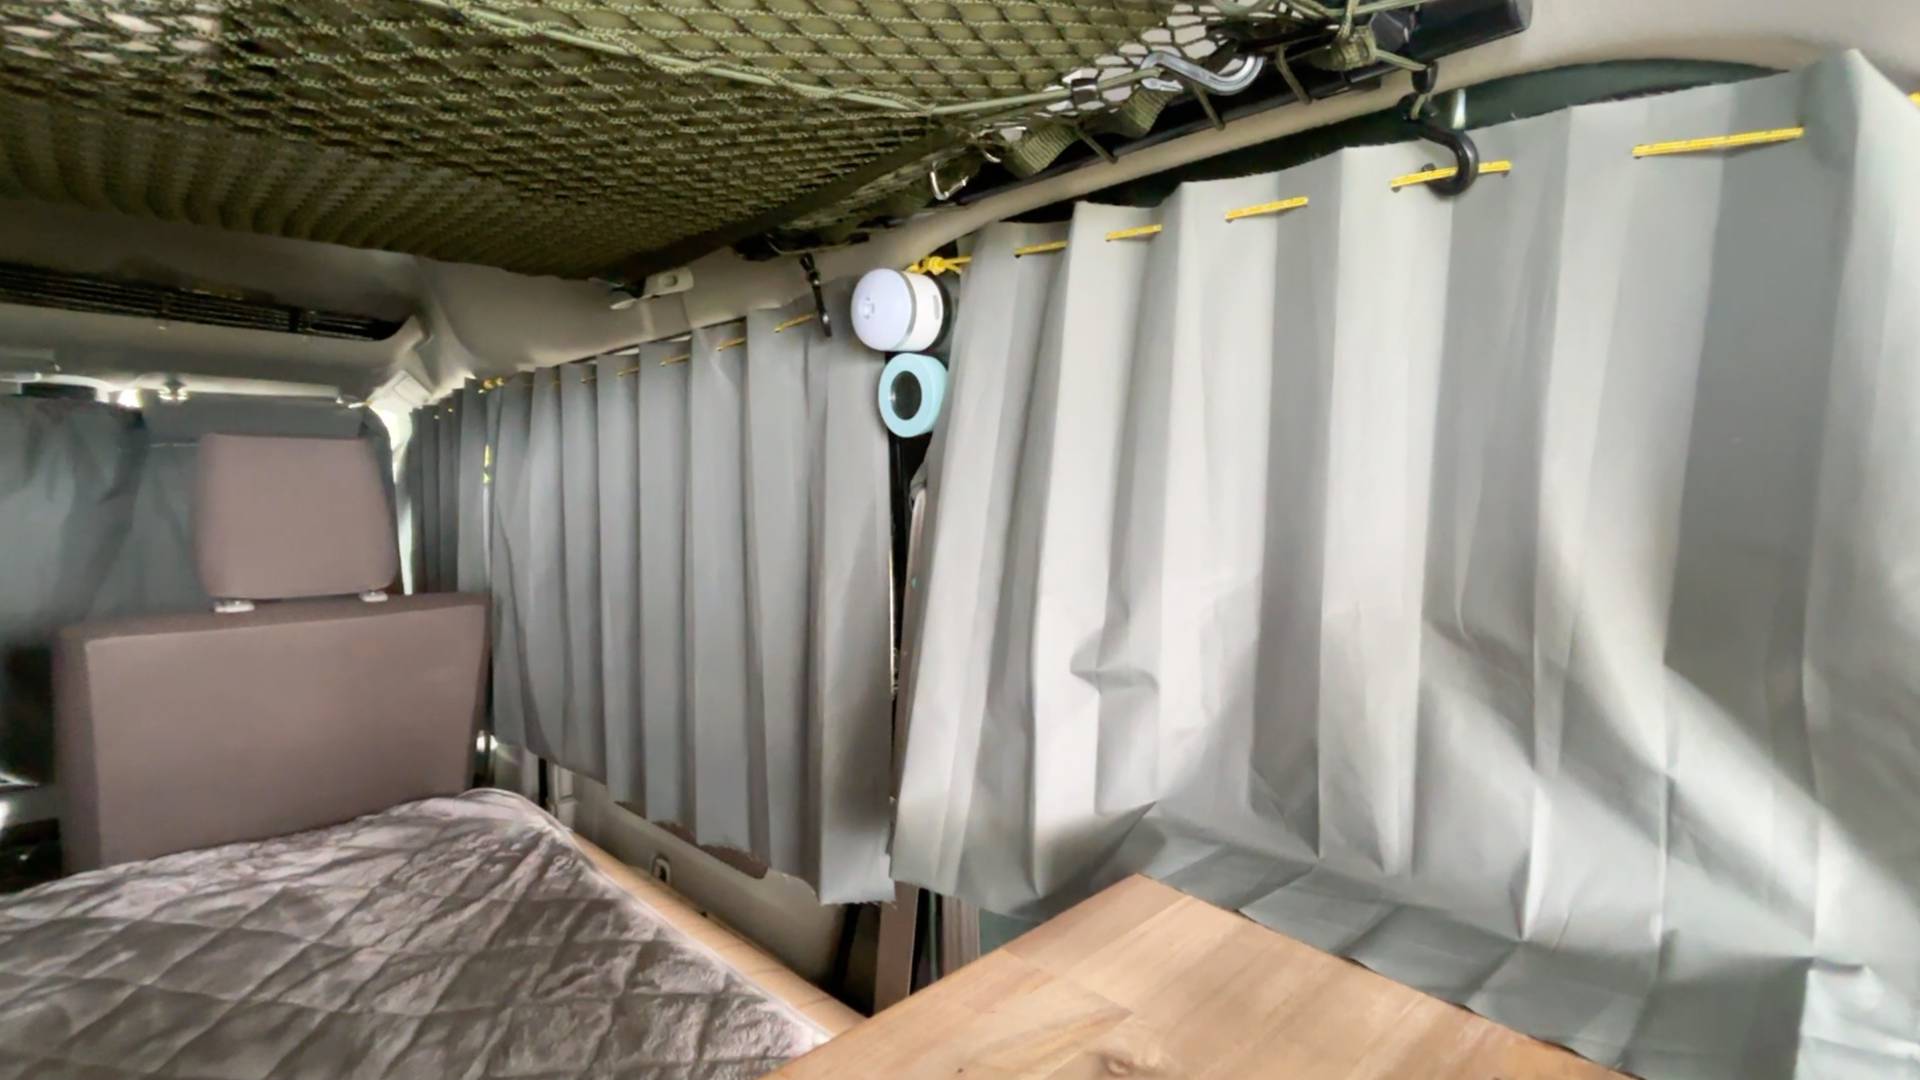 【軽バンカスタマイズ17】IKEAの切りっぱなしでも使える遮光カーテンをガイロープで車に加工することなく設置